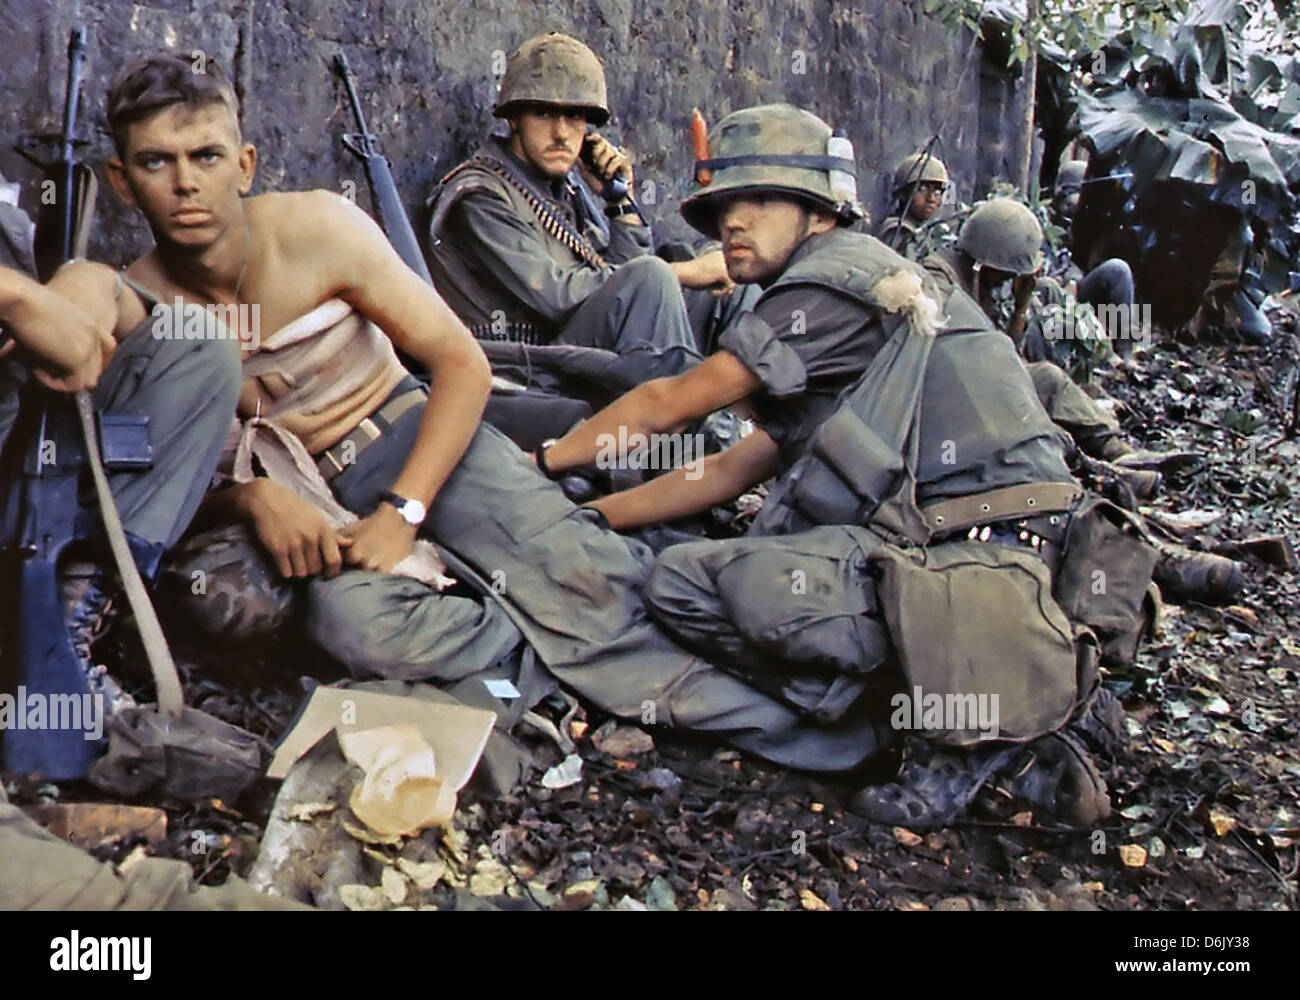 US Marine D. R. Howe traite les blessures du Soldat de première classe D. A. Crum pendant l'Offensive du Têt, le 2 juin 1968 dans la ville de Hue, Vietnam. Banque D'Images